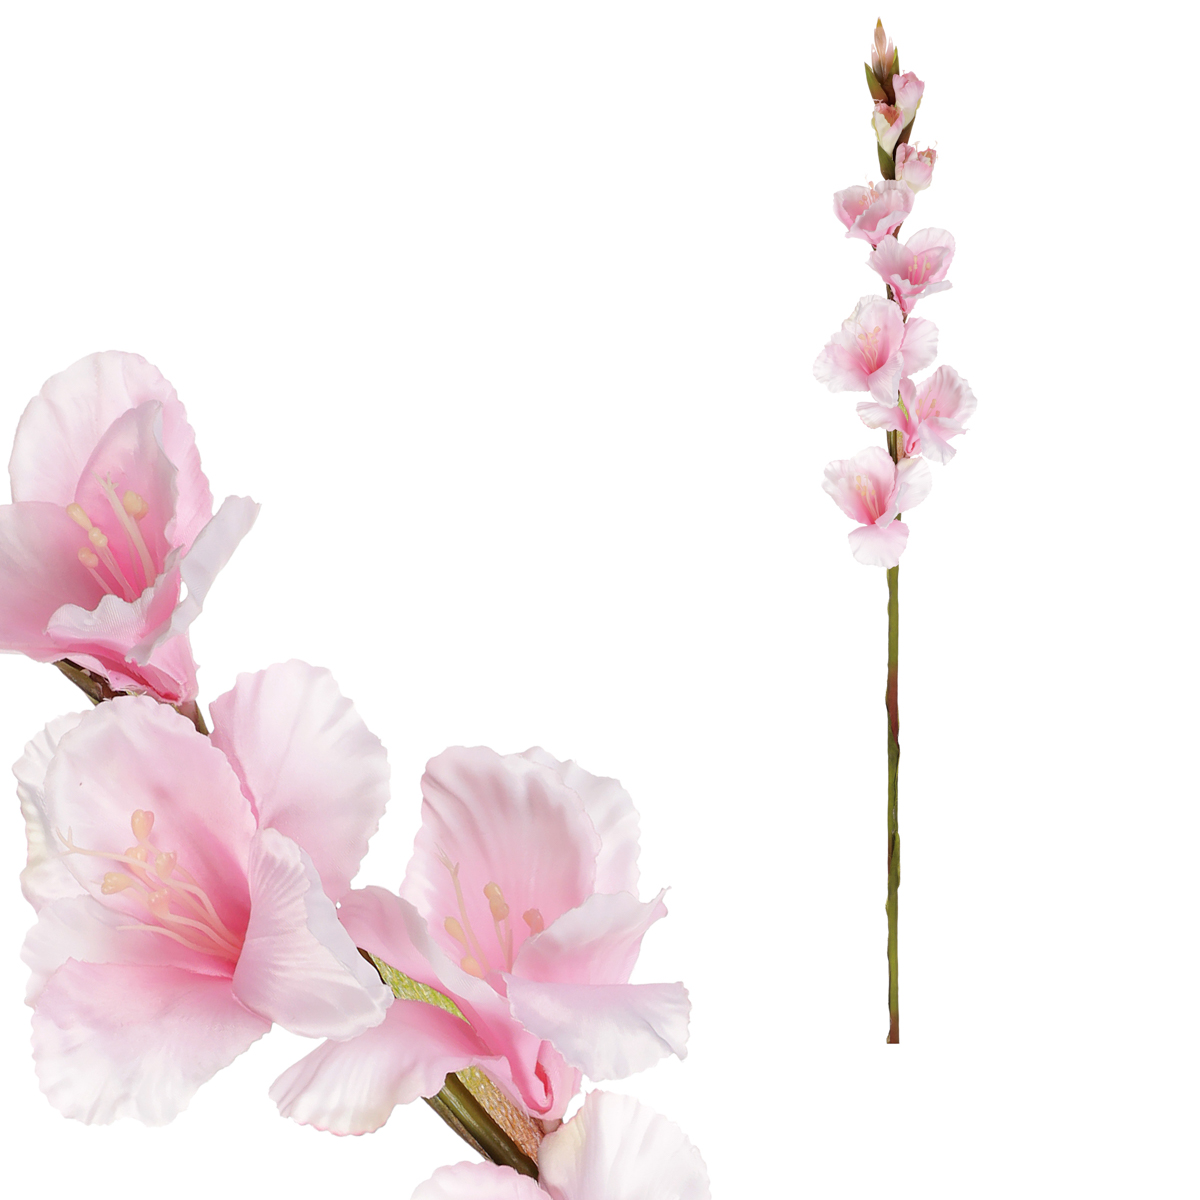 Gladiola - umělá květina, barva světle růžová.